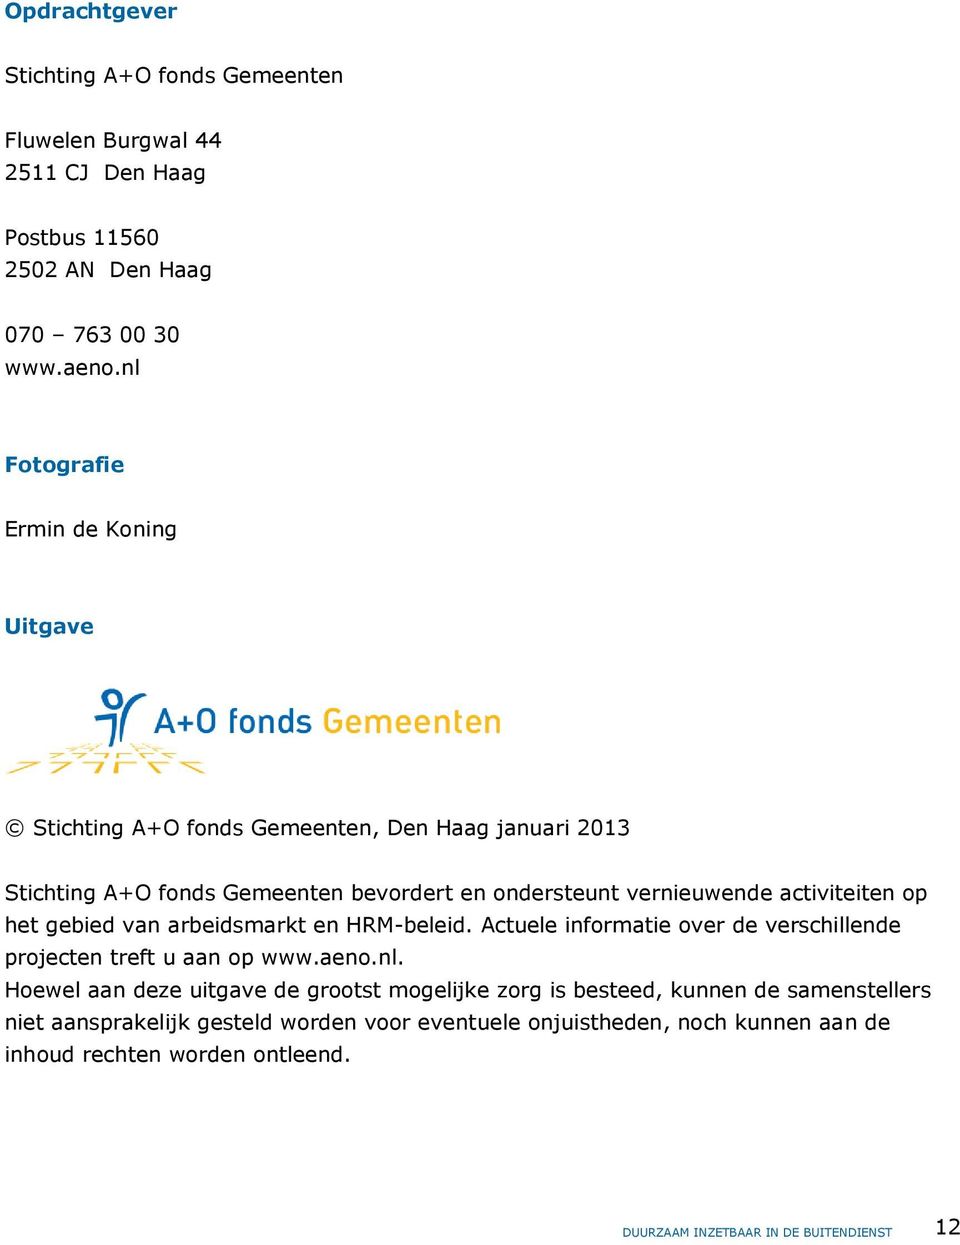 activiteiten op het gebied van arbeidsmarkt en HRM-beleid. Actuele informatie over de verschillende projecten treft u aan op www.aeno.nl.